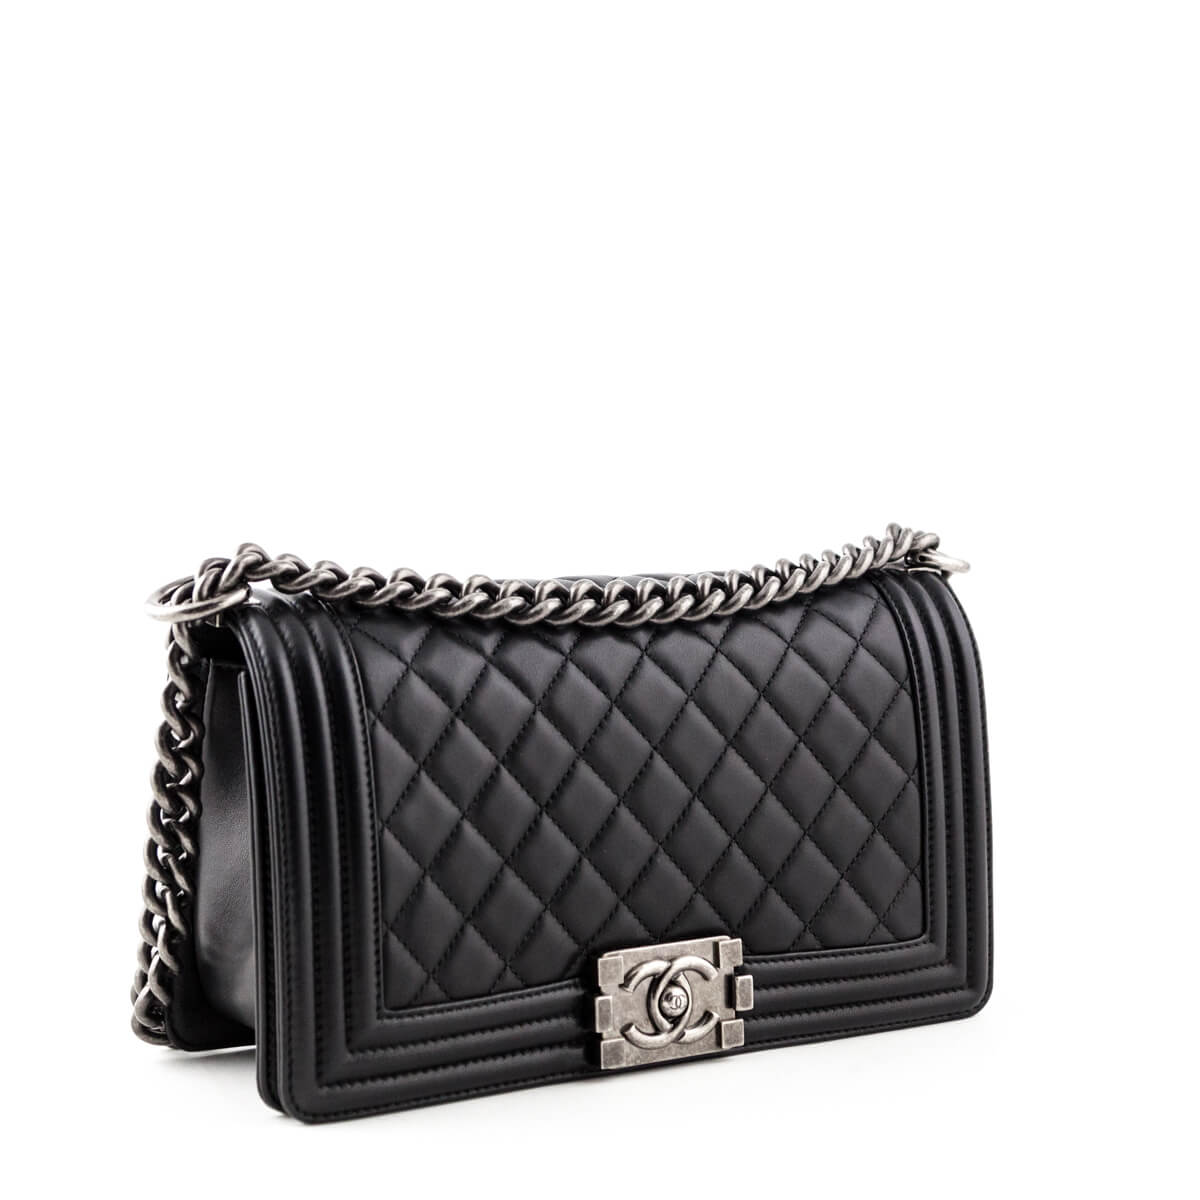 Chanel Black Calfskin Old Medium Boy Bag - Chanel Bags Canada